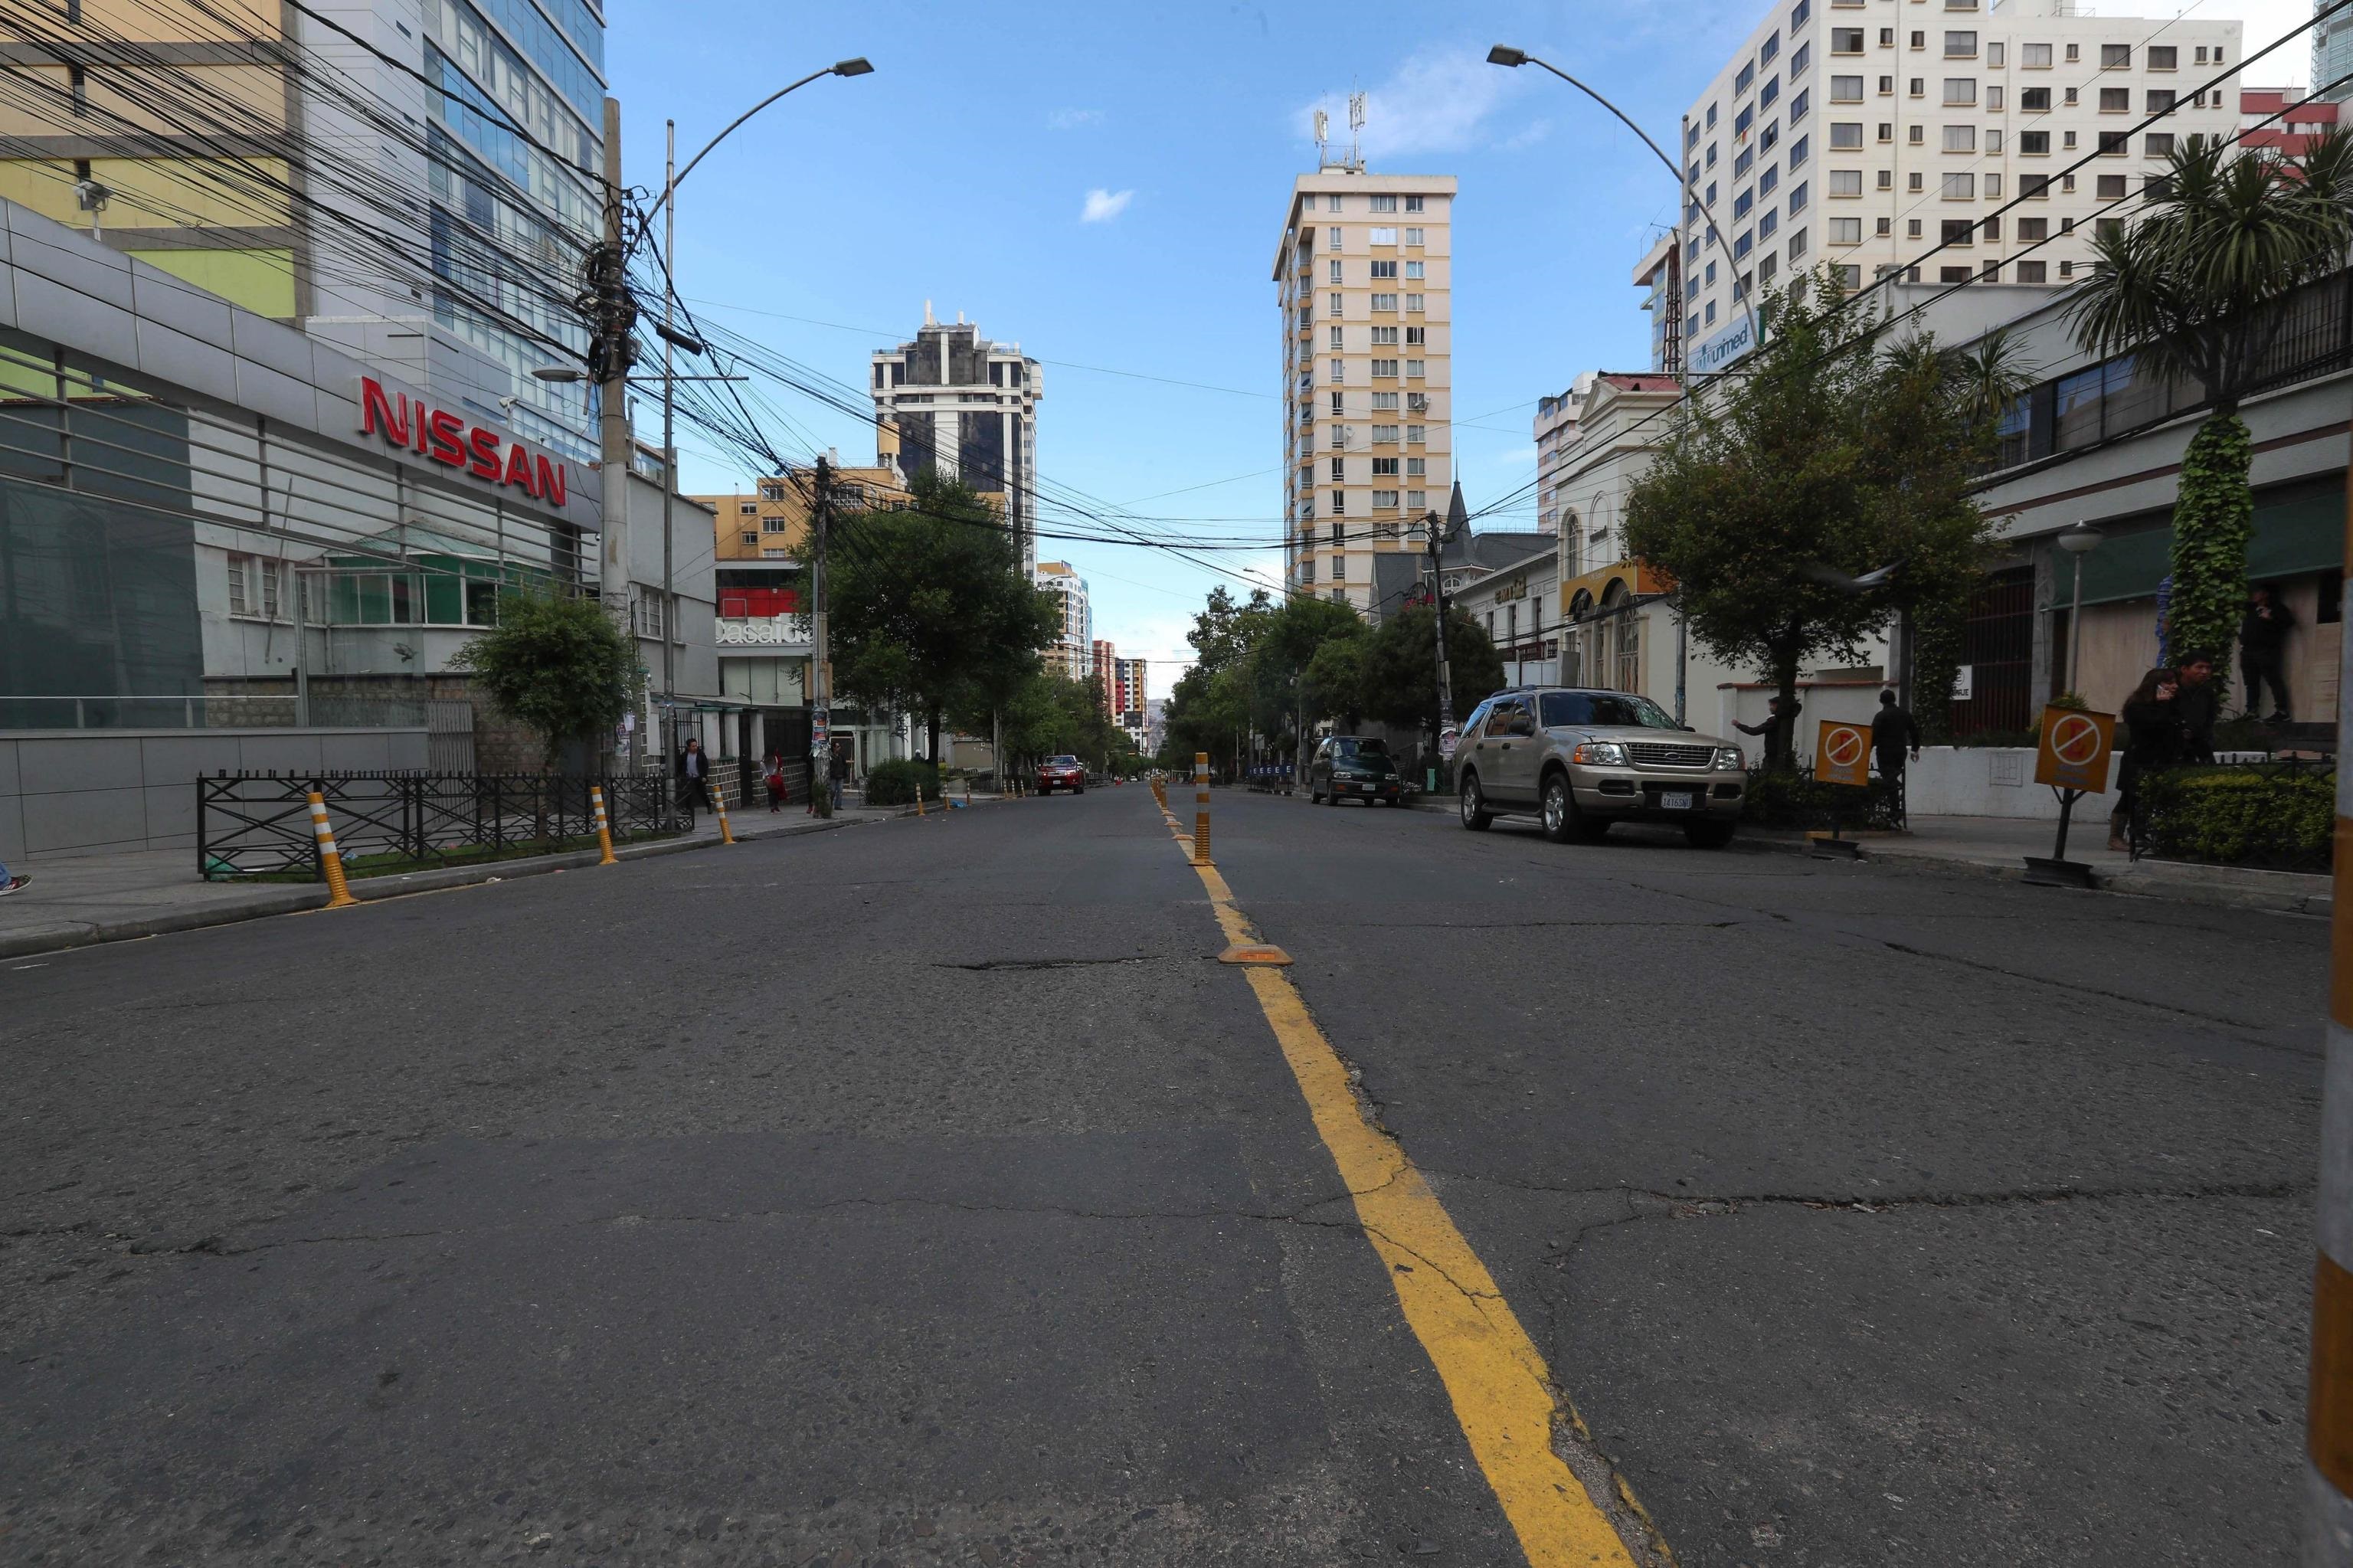 Strada deserta a La Paz, in Bolivia, dopo i disordini, le dimissioni di Evo Morales e l'acquisizione del potere da parte della polizia